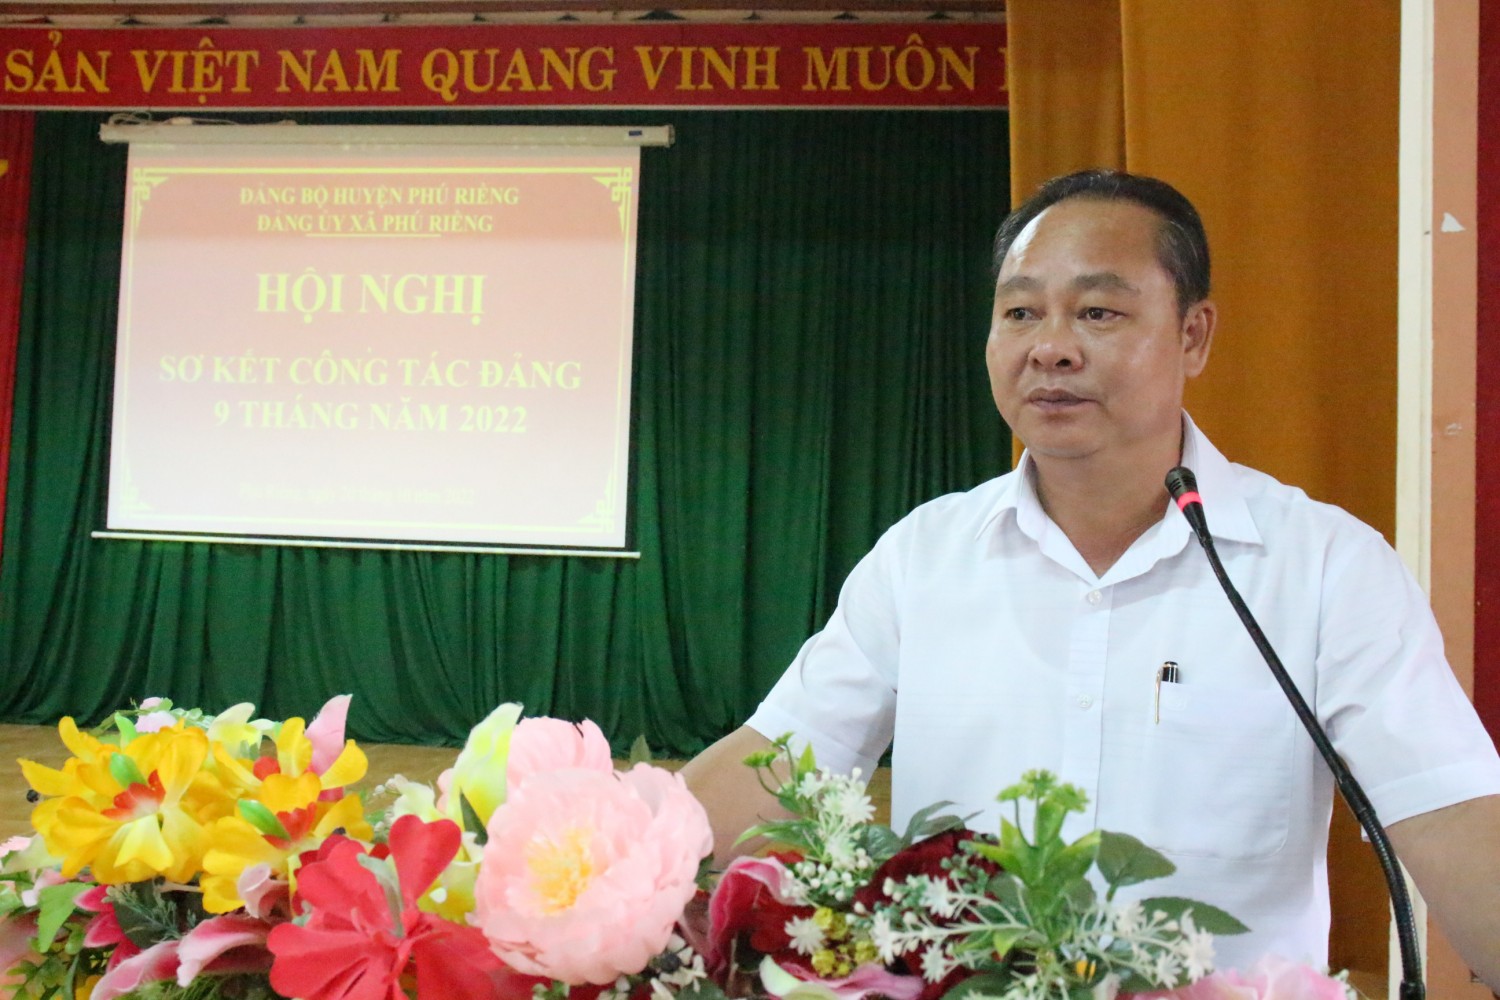 Xã Phú Riềng sơ kết công tác Đảng 9 tháng năm 2022.